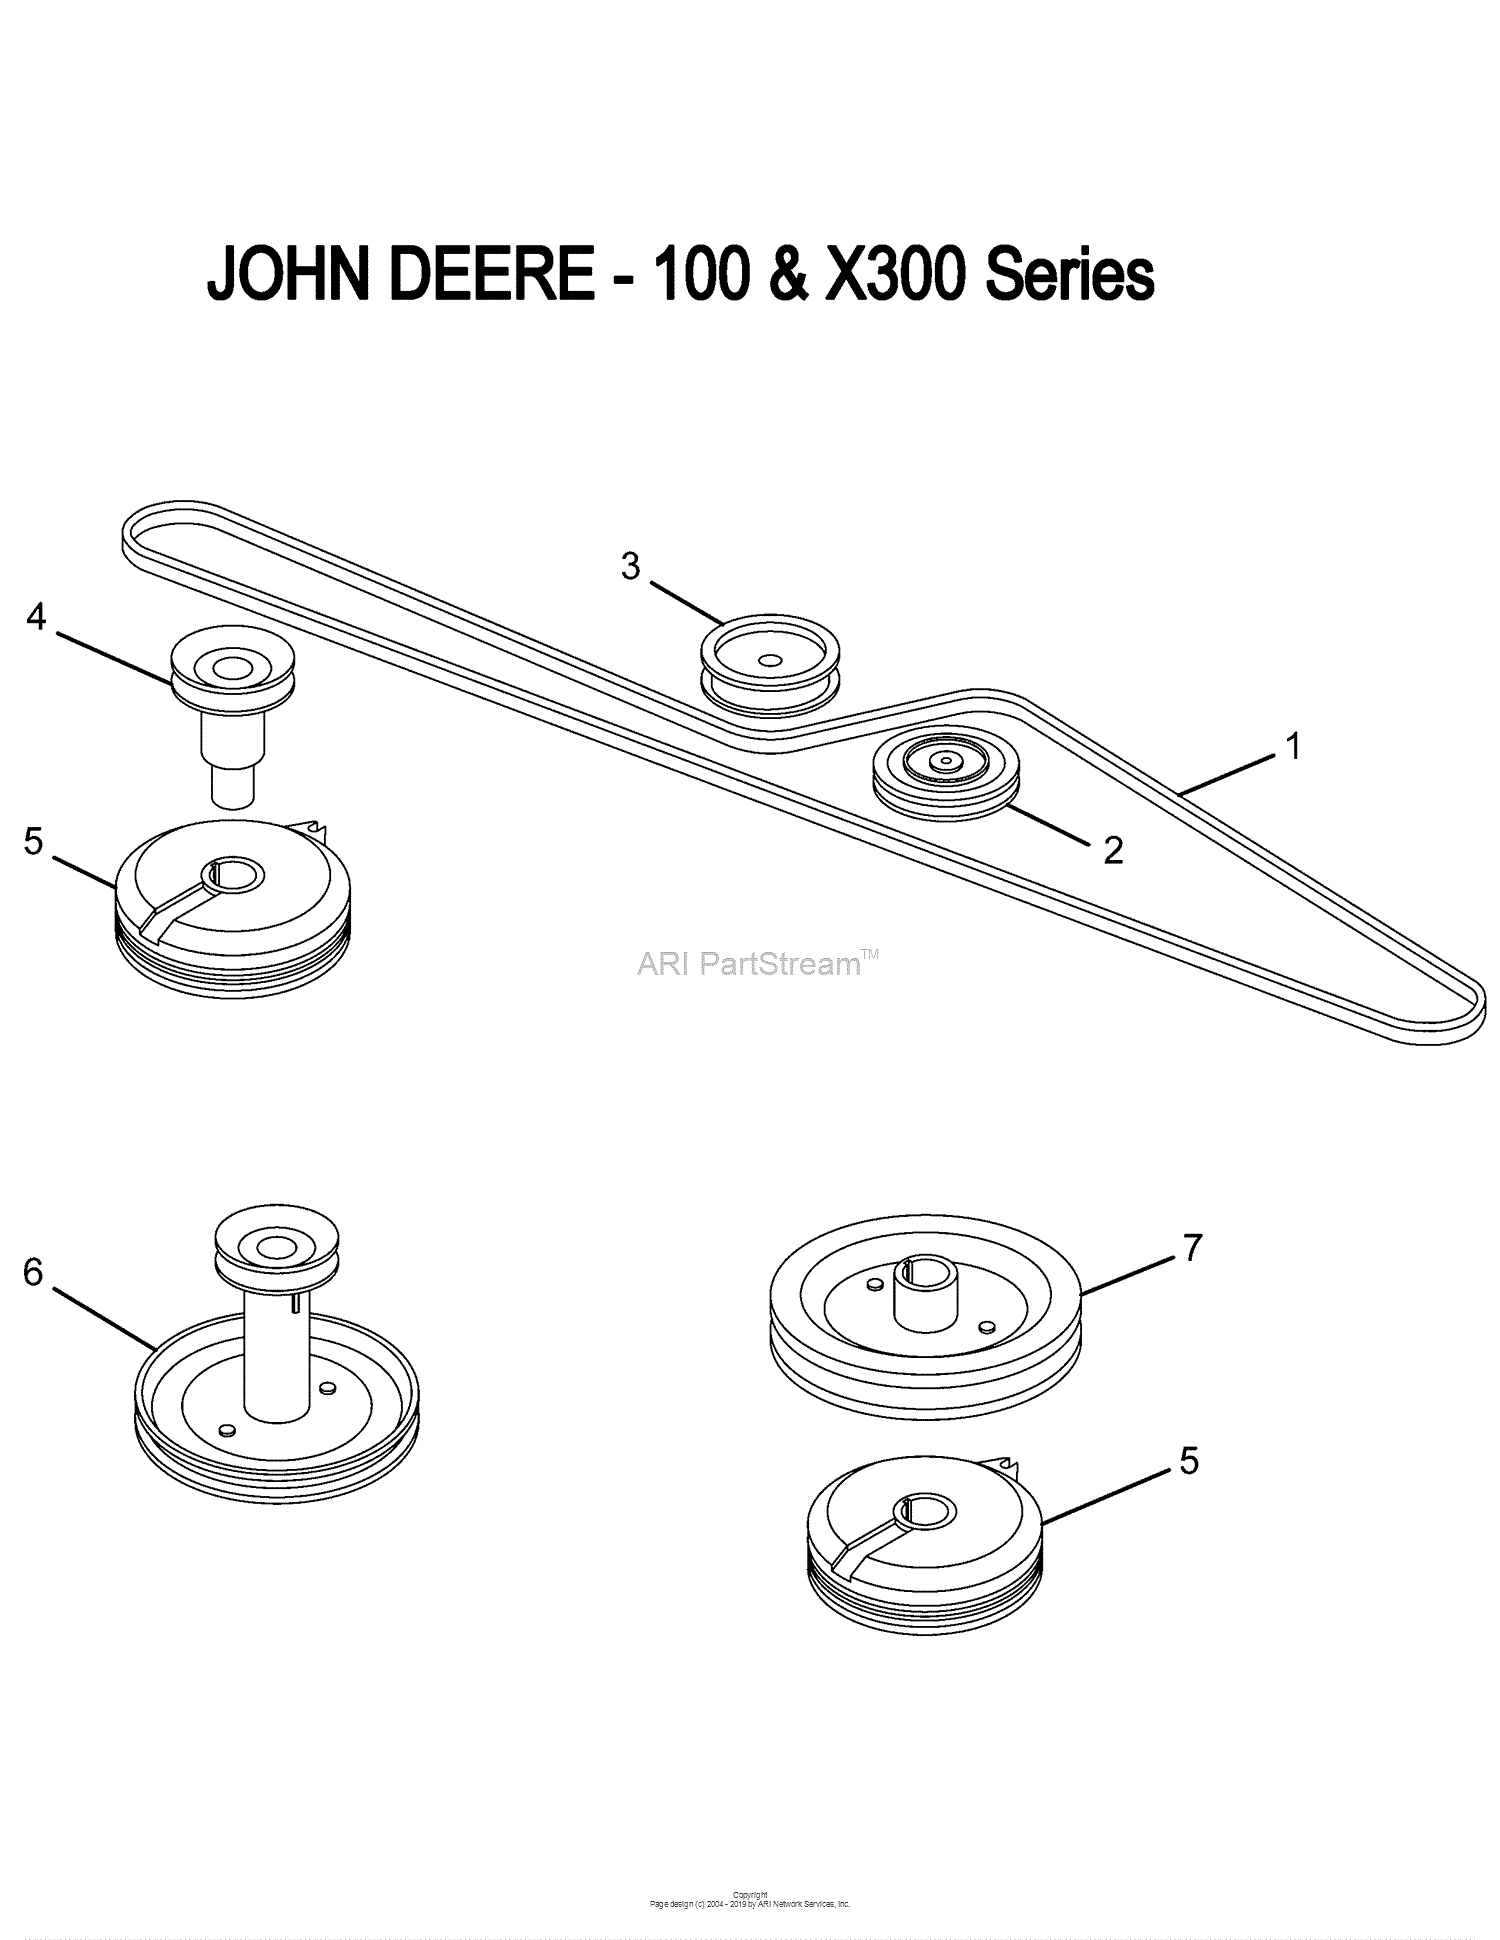 Oregon John Deere Parts Diagram For John Deere 100 And X300 Series